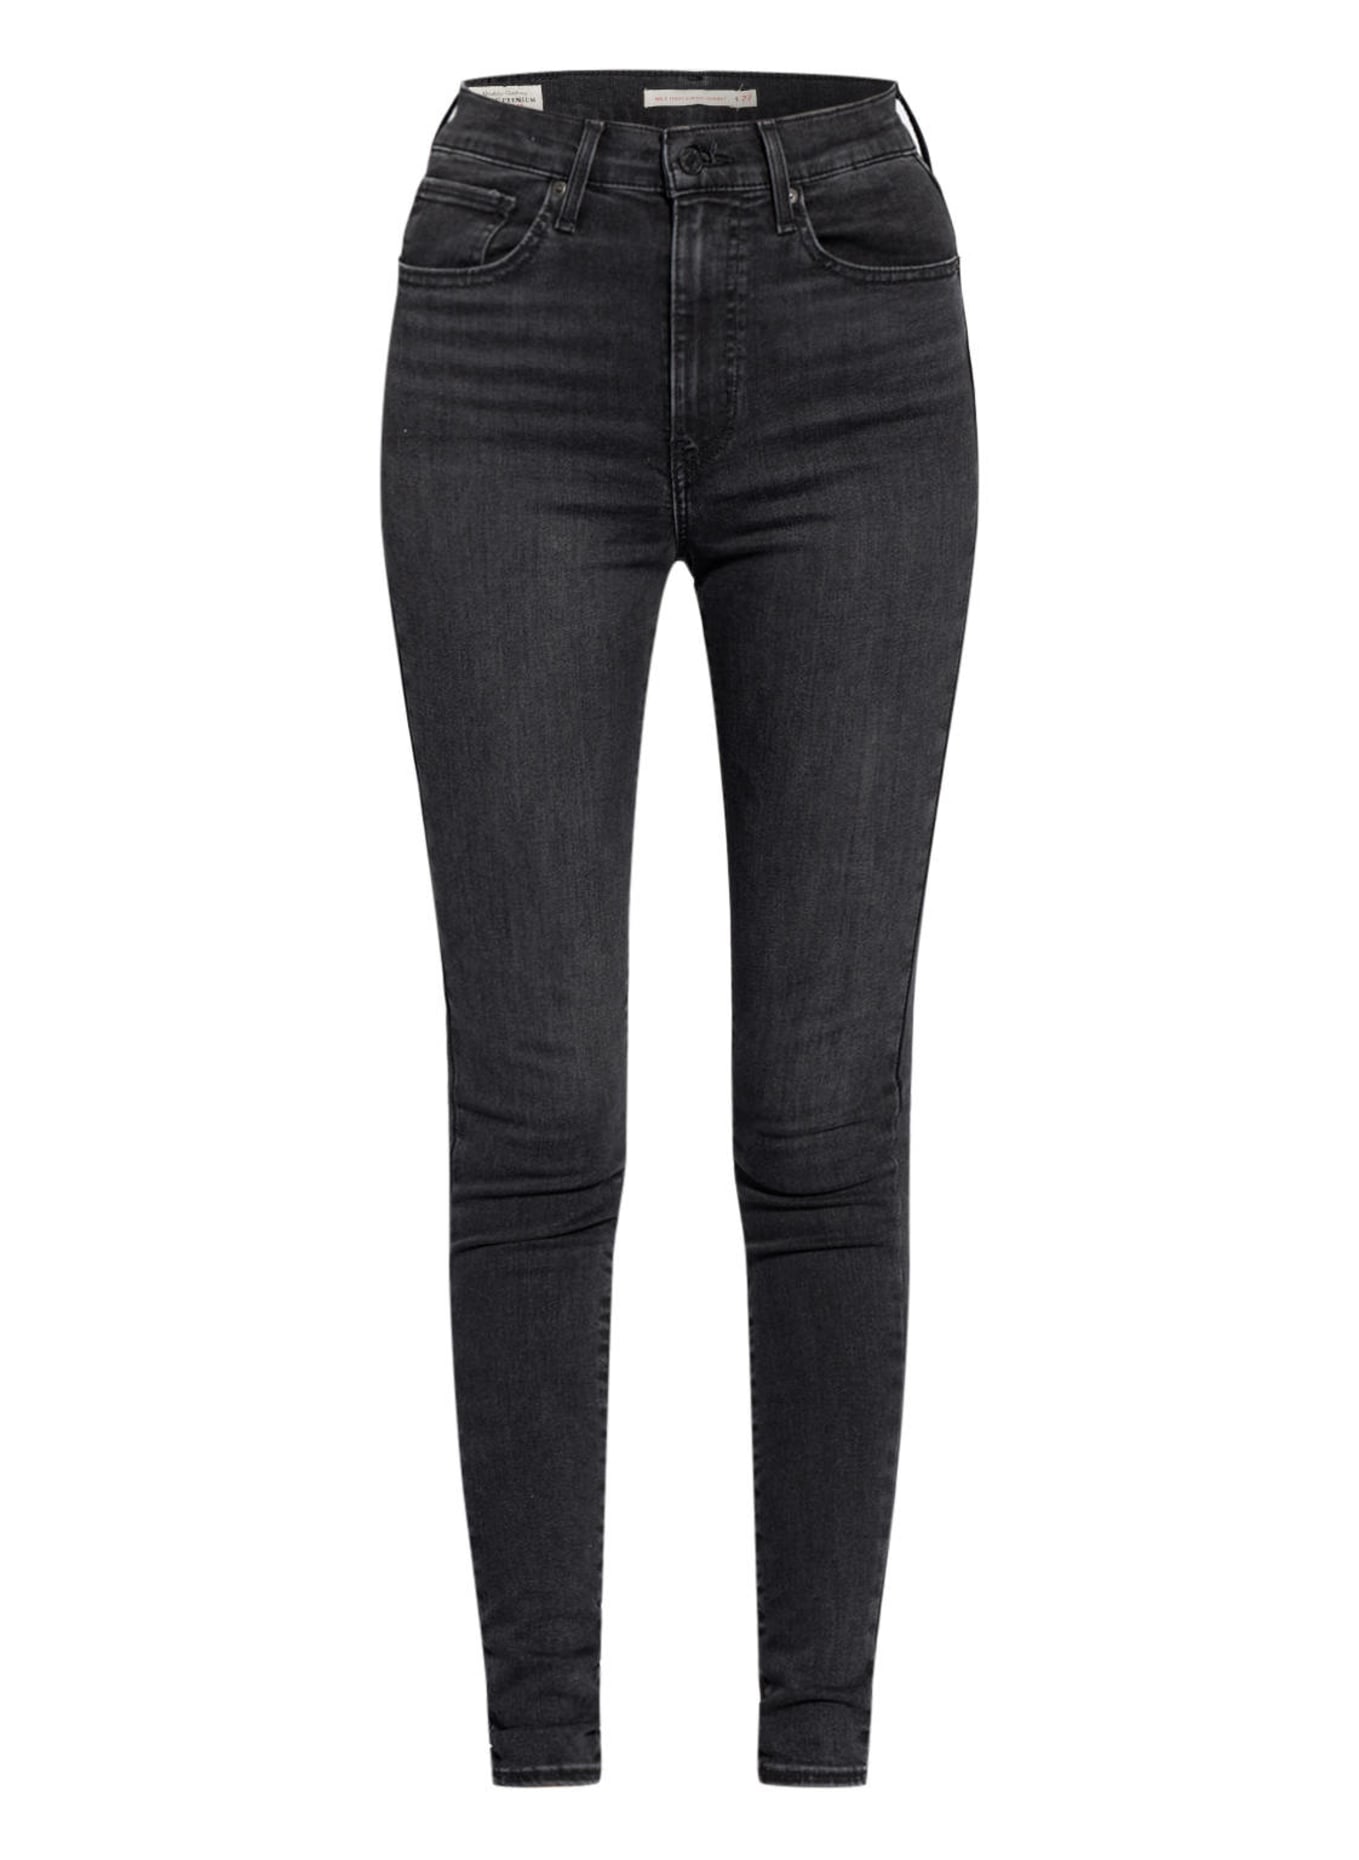 Levi's® Skinny Jeans MILE HIGH SUPER SKINNY , Color: 47 Blacks (Image 1)